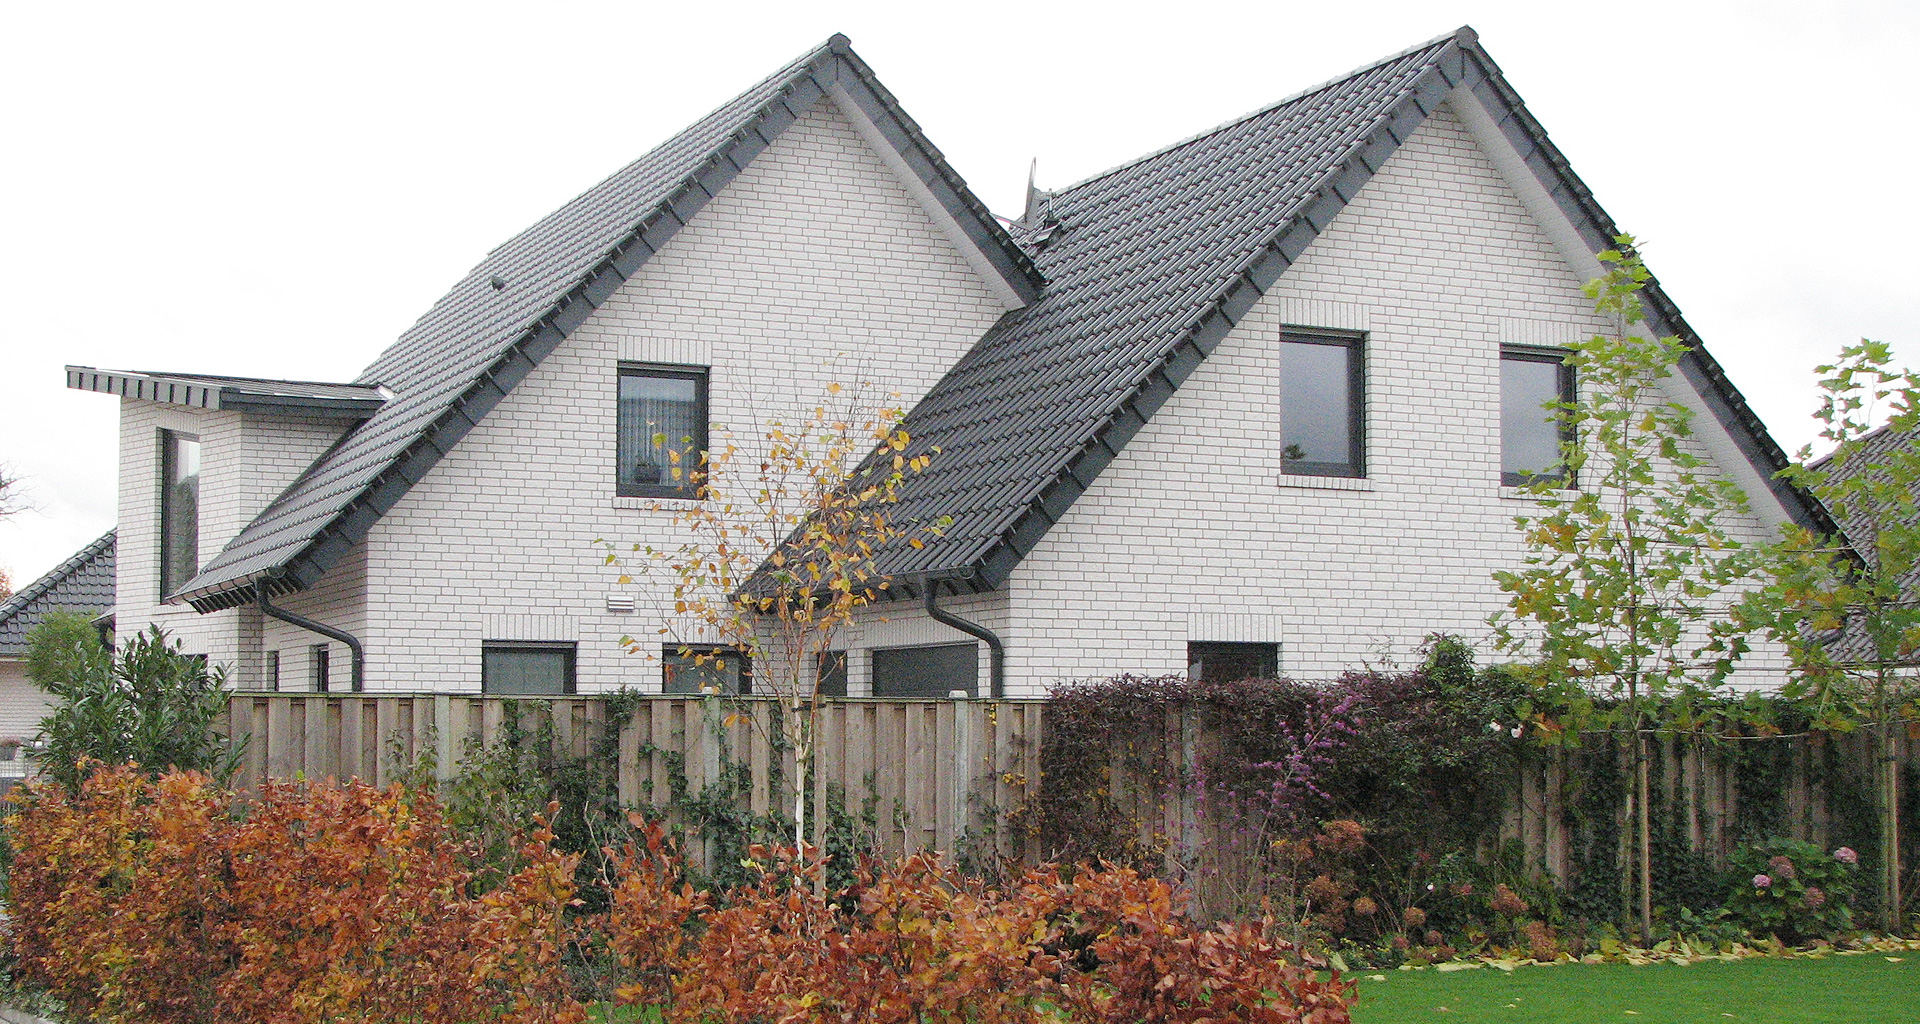 Einfamilienhauses in Bad Bentheim 2009